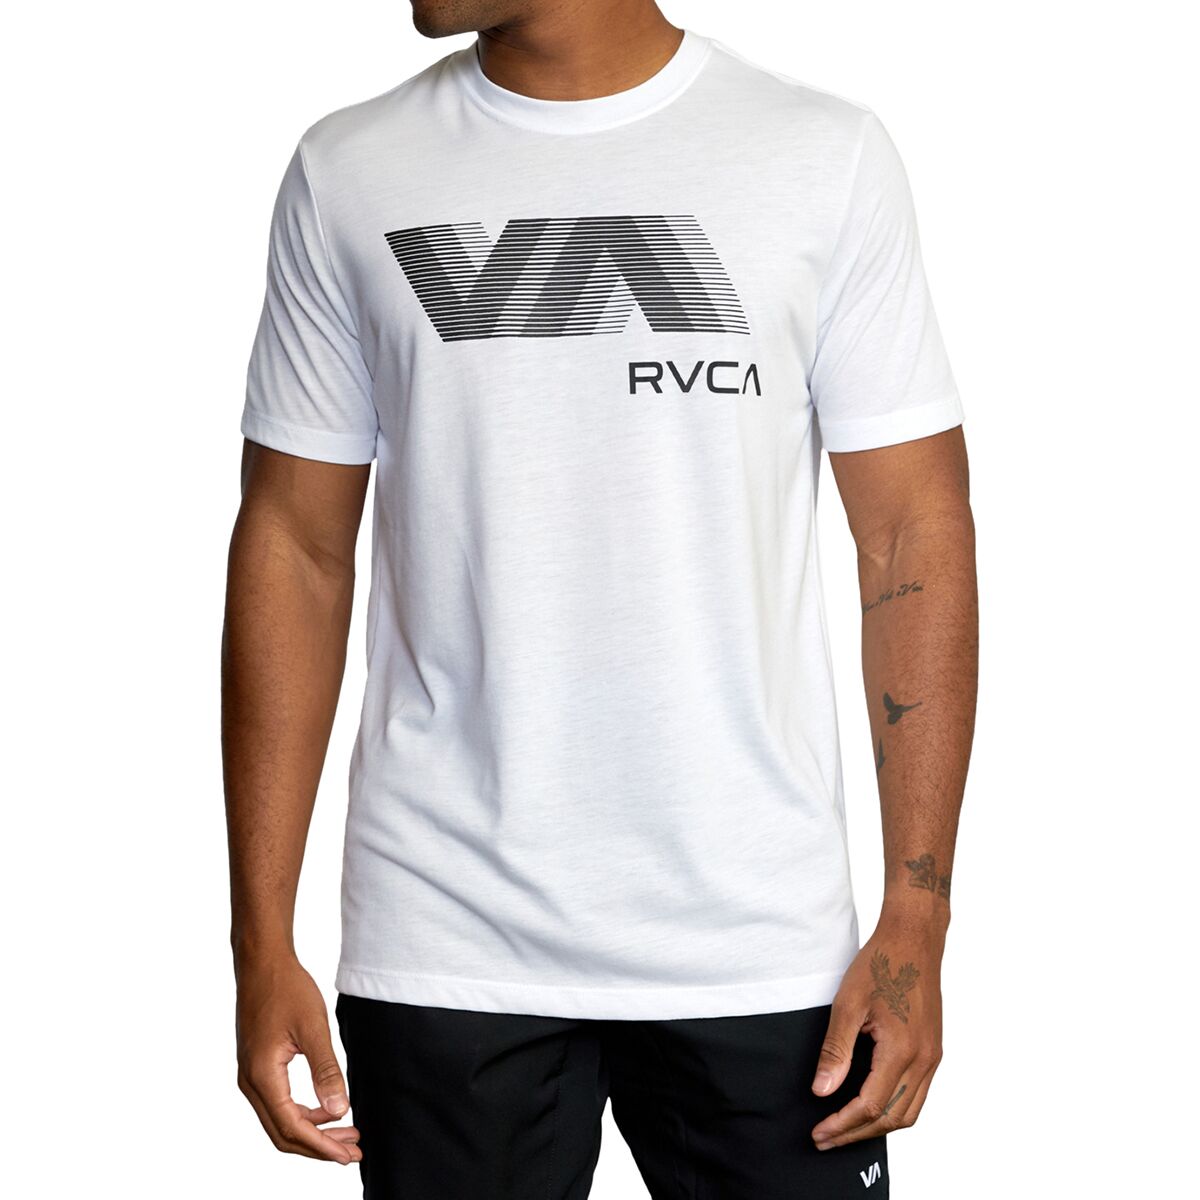 RVCA VA RVCA Blur T-Shirt - Men's